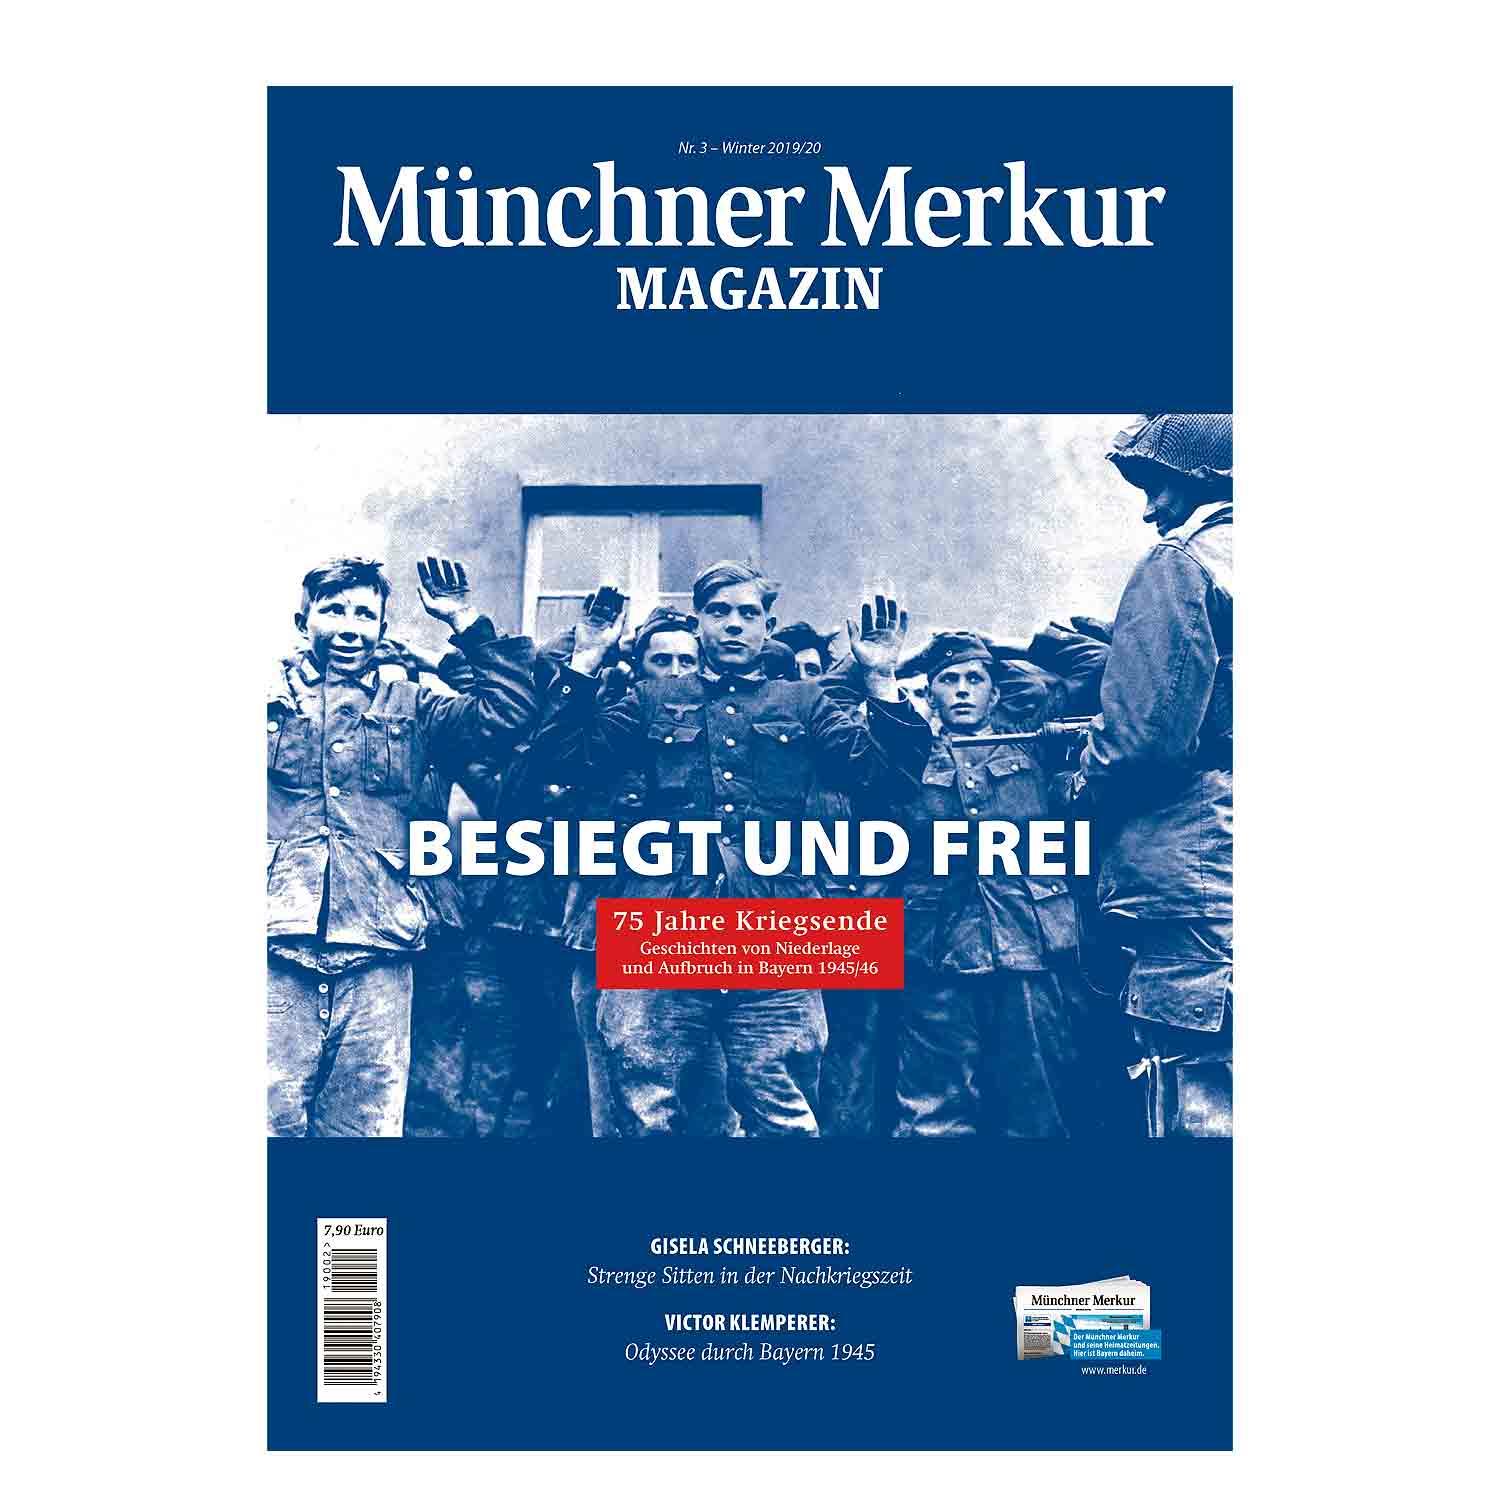 Magazin "Besiegt und frei - 75 Jahre Kriegsende" - bavariashop - mei LebensGfui